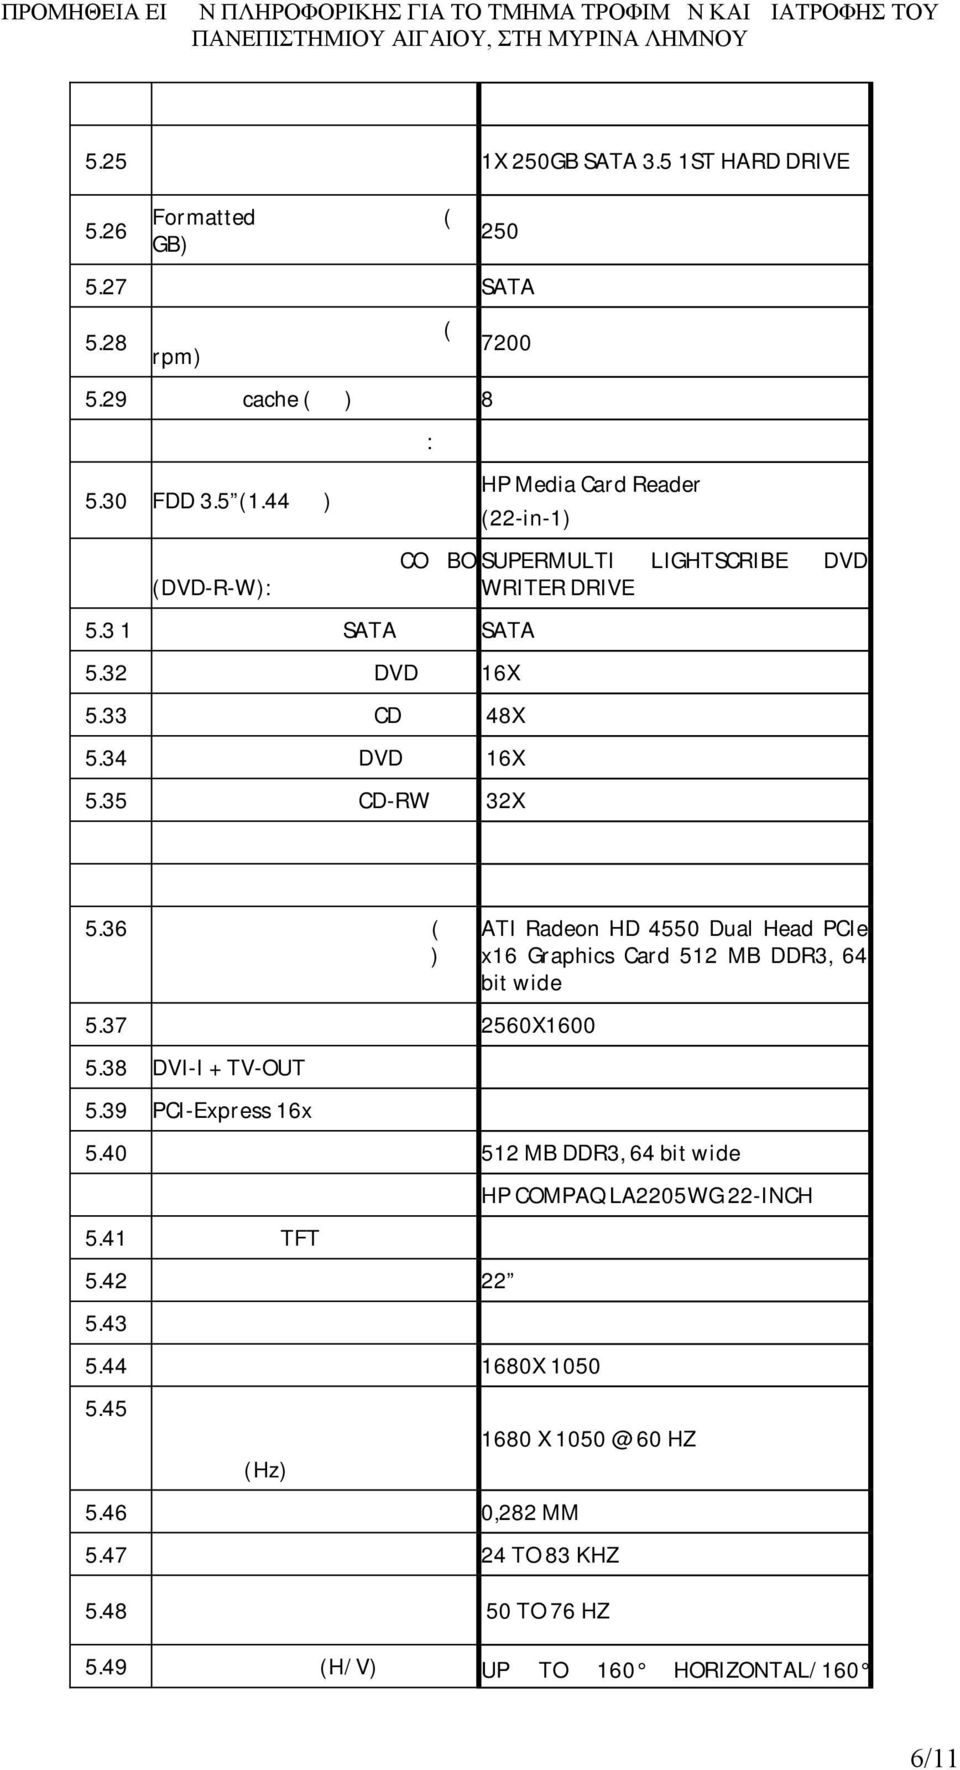 44ΜΒ) HP Media Card Reader (22-in-1) Μονάδα οπτικού δίσκου COΜBO SUPERMULTI LIGHTSCRIBE DVD (DVD-R-W): WRITER DRIVE Α5.3 1 Σύνδεση σε δίαυλο SATA SATA Α5.32 Ταχύτητα ανάγνωσης DVD 16X Α5.